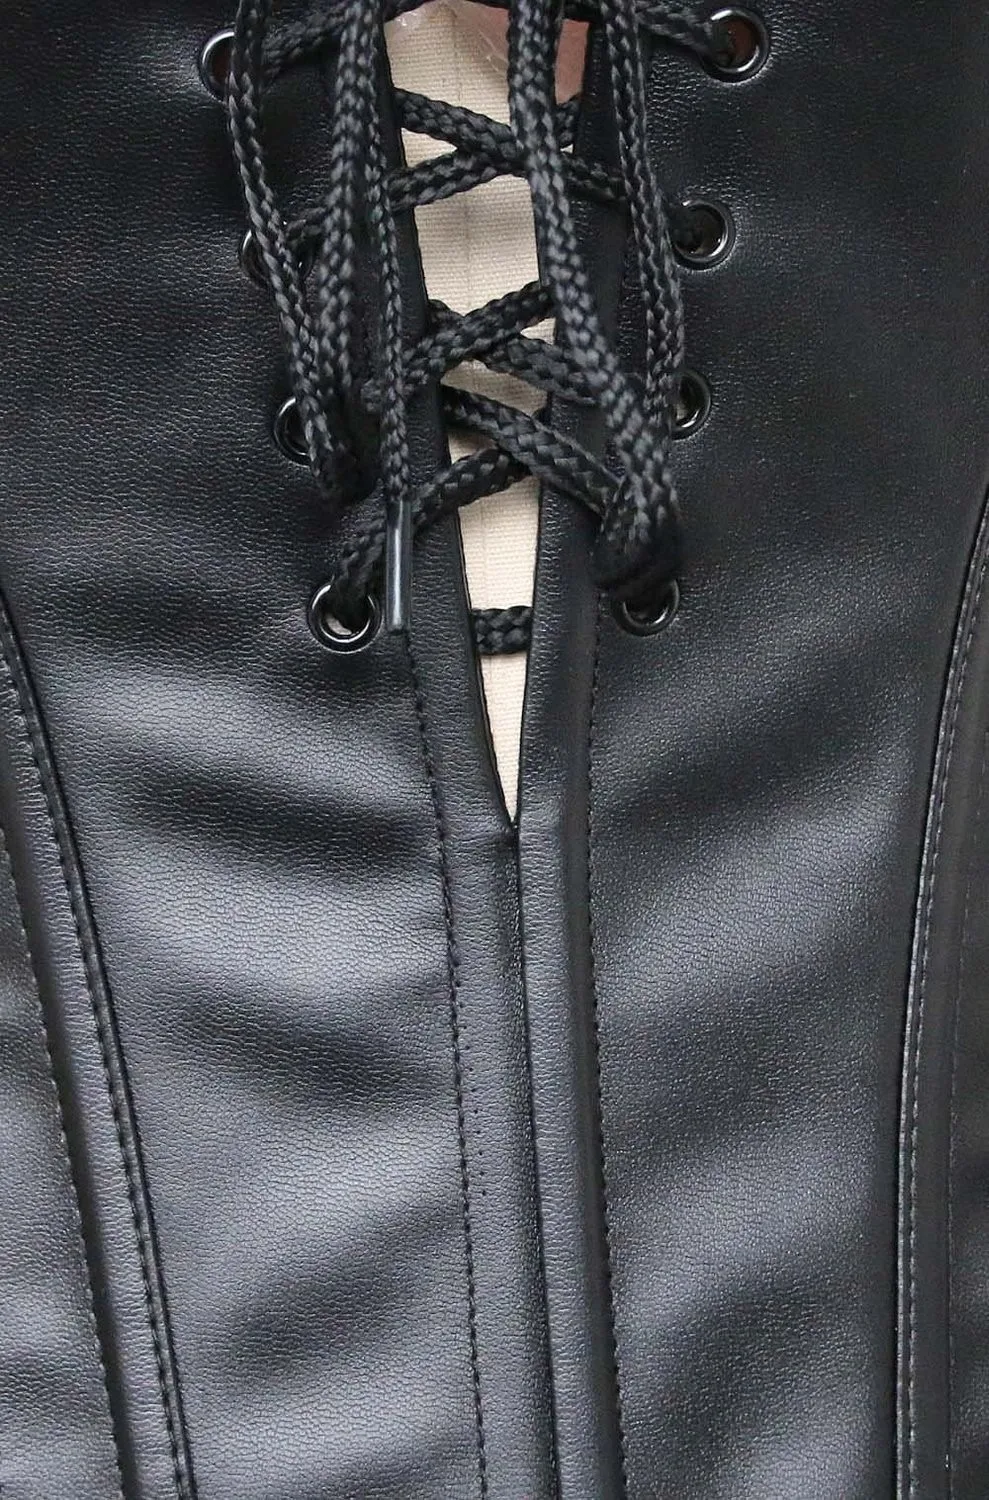 6XL сексуальное женское белье стимпанк со стальными косточками Готический кружевной сексуальный боди бюстье корсет с чашками Женский Черный Пояс Cincher Корсеты Платье